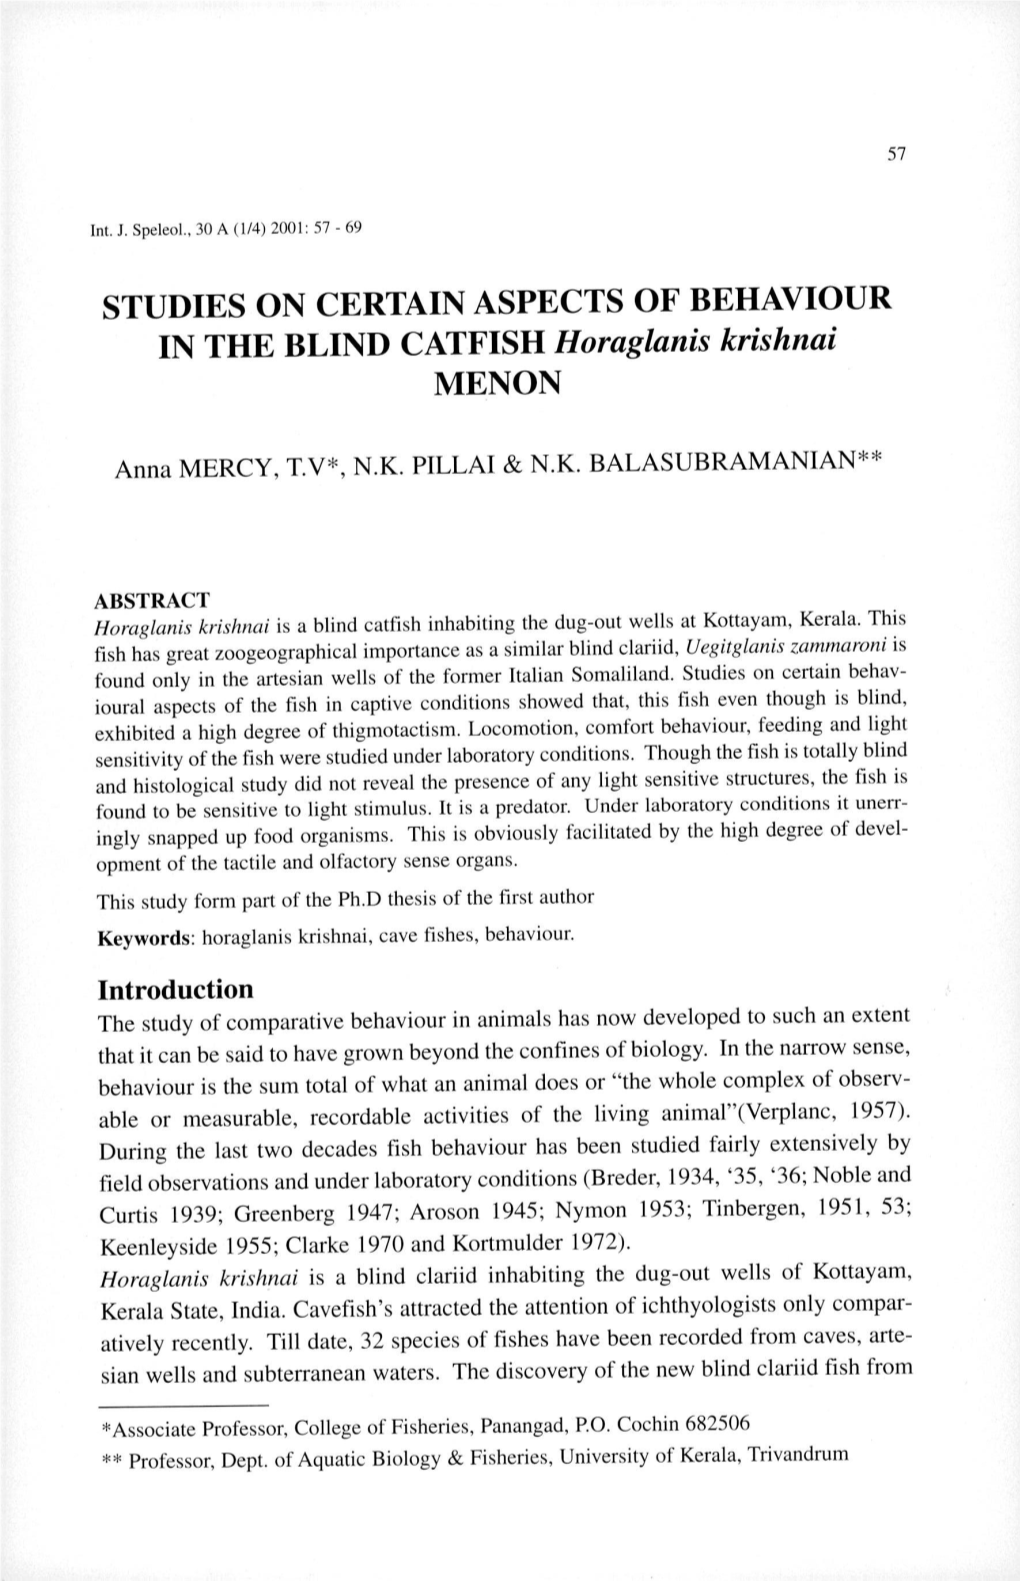 Studies on Certain Aspects of Behaviour in the Blind Catfish &lt;Em